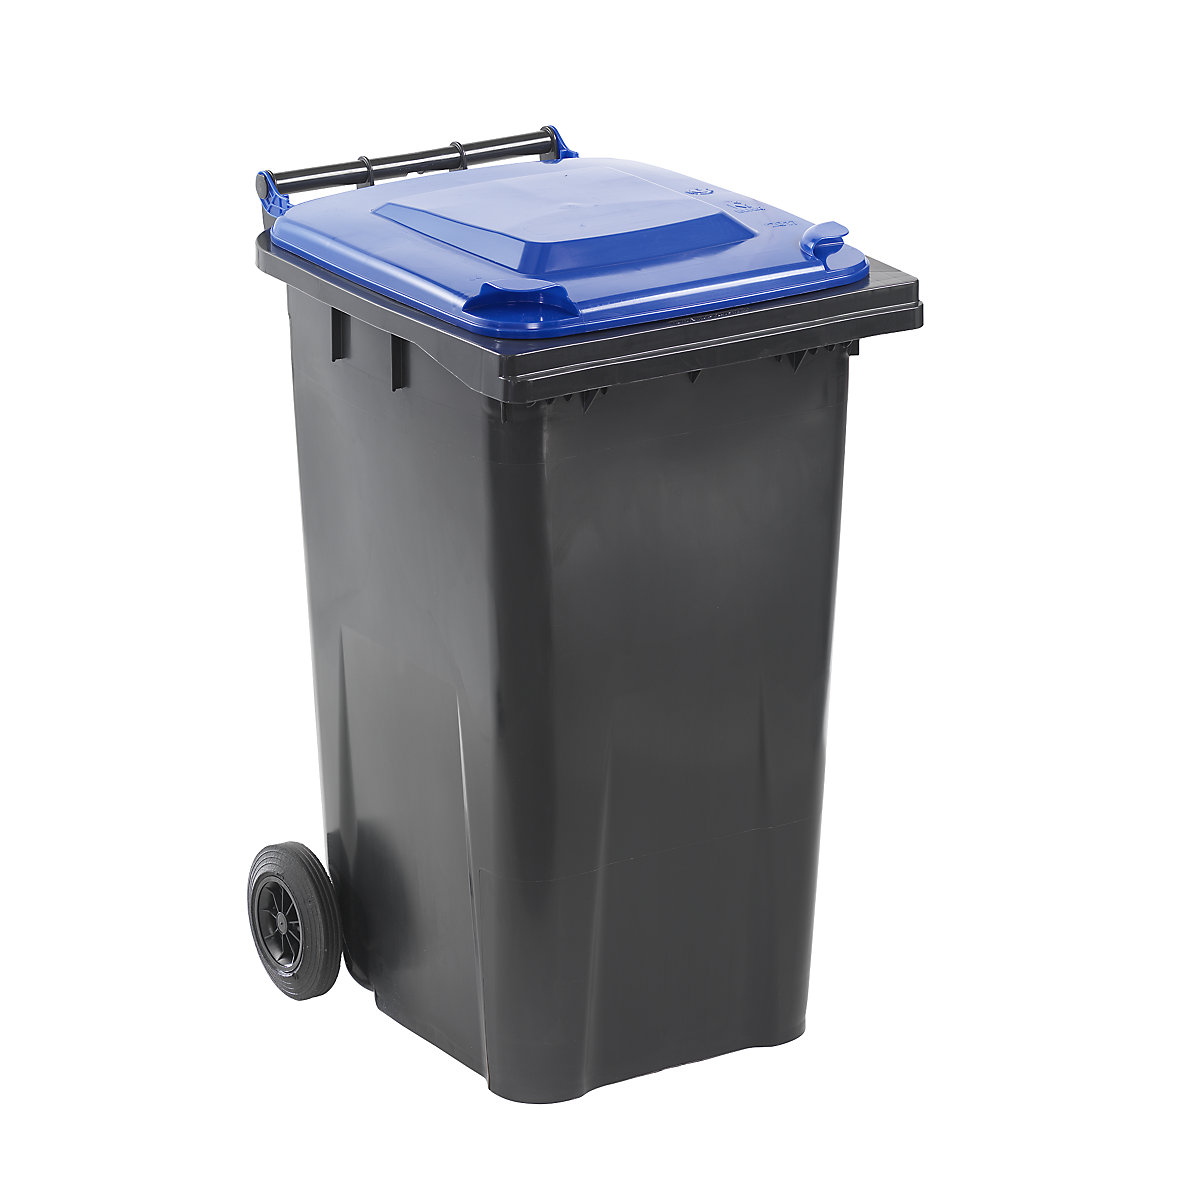 DIN EN 840 szabvány szerinti hulladékgyűjtő, űrtartalom 240 l, szé x ma x mé 580 x 1100 x 740 mm, antracit színben, kék fedéllel